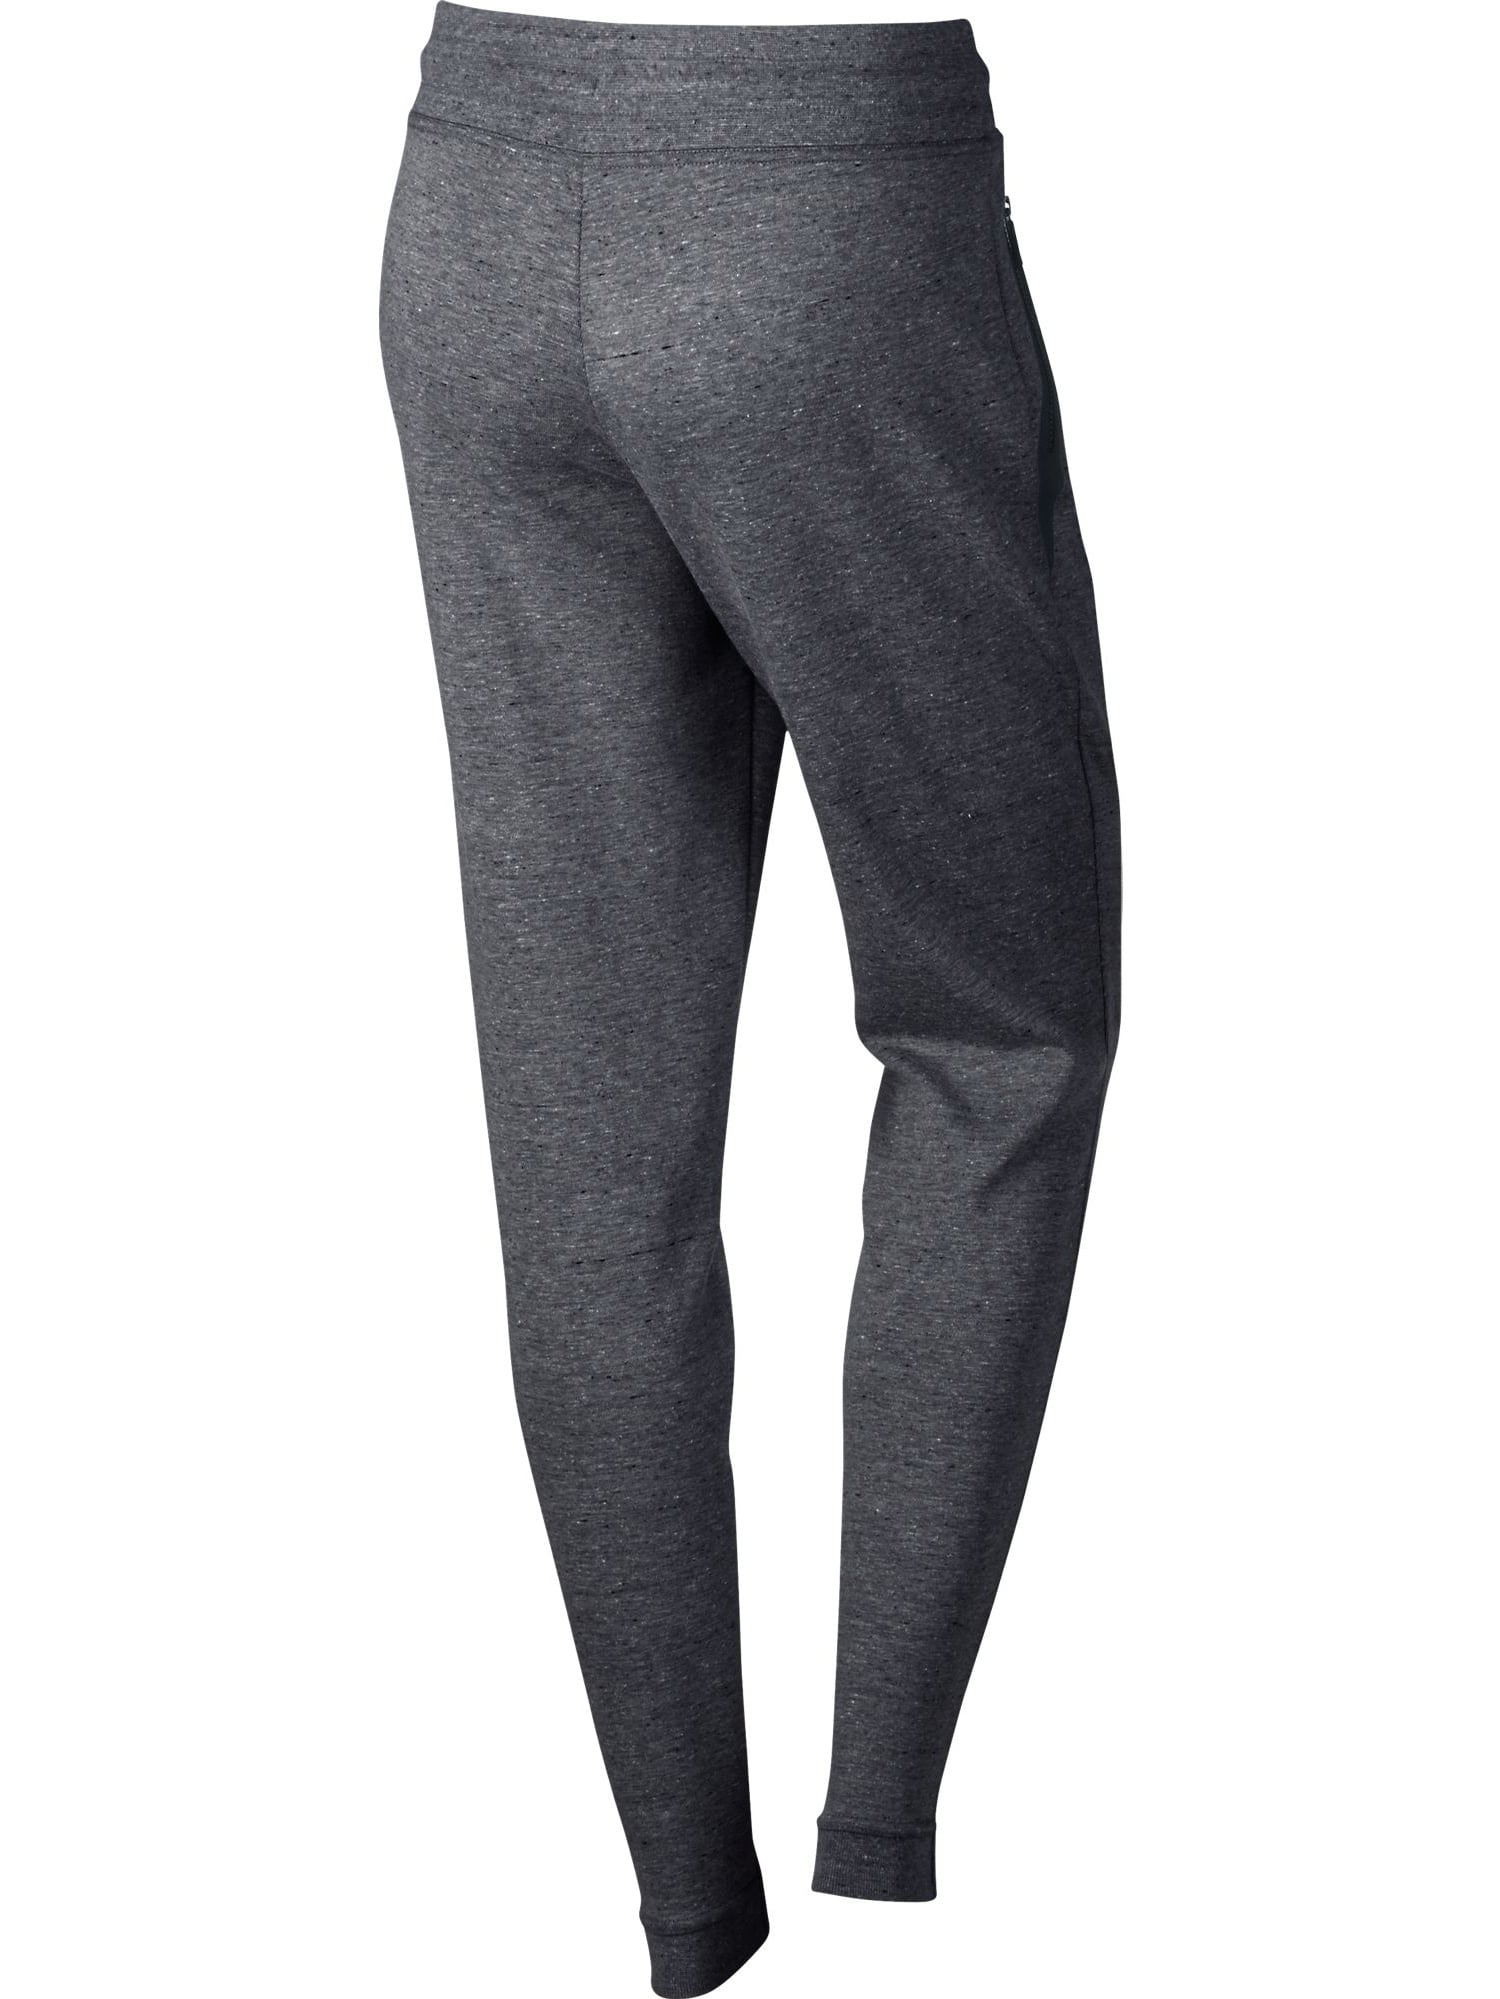 Nike Sportswear Tech Fleece Women's Pants Carbon Heather/Black 803575-063 